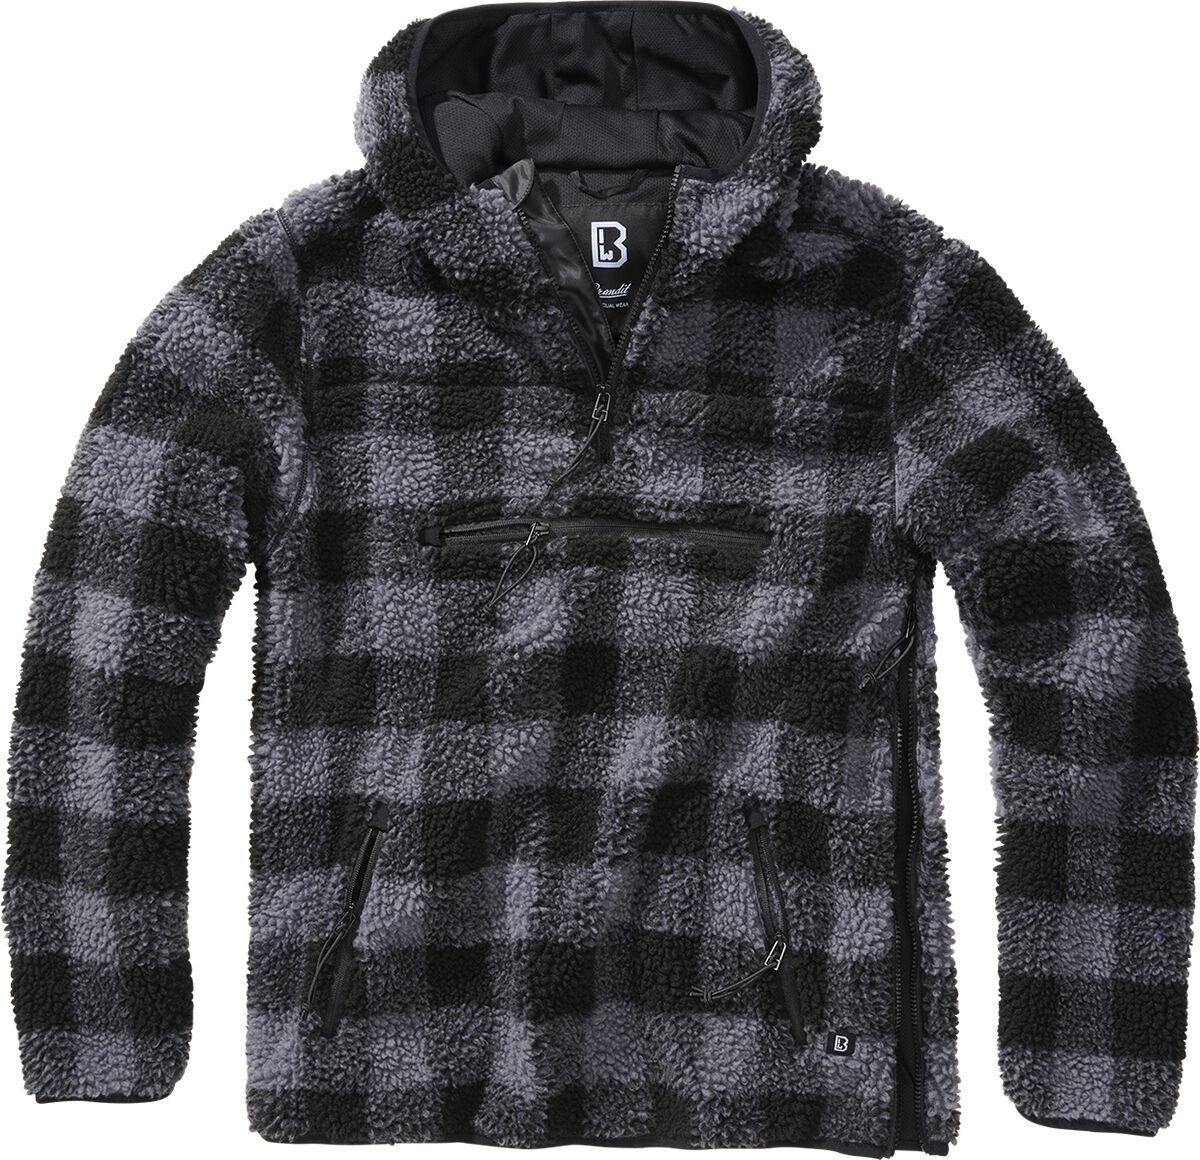 Image of Felpa con cappuccio di Brandit - Fleece Worker Pullover - S a L - Uomo - nero/grigio